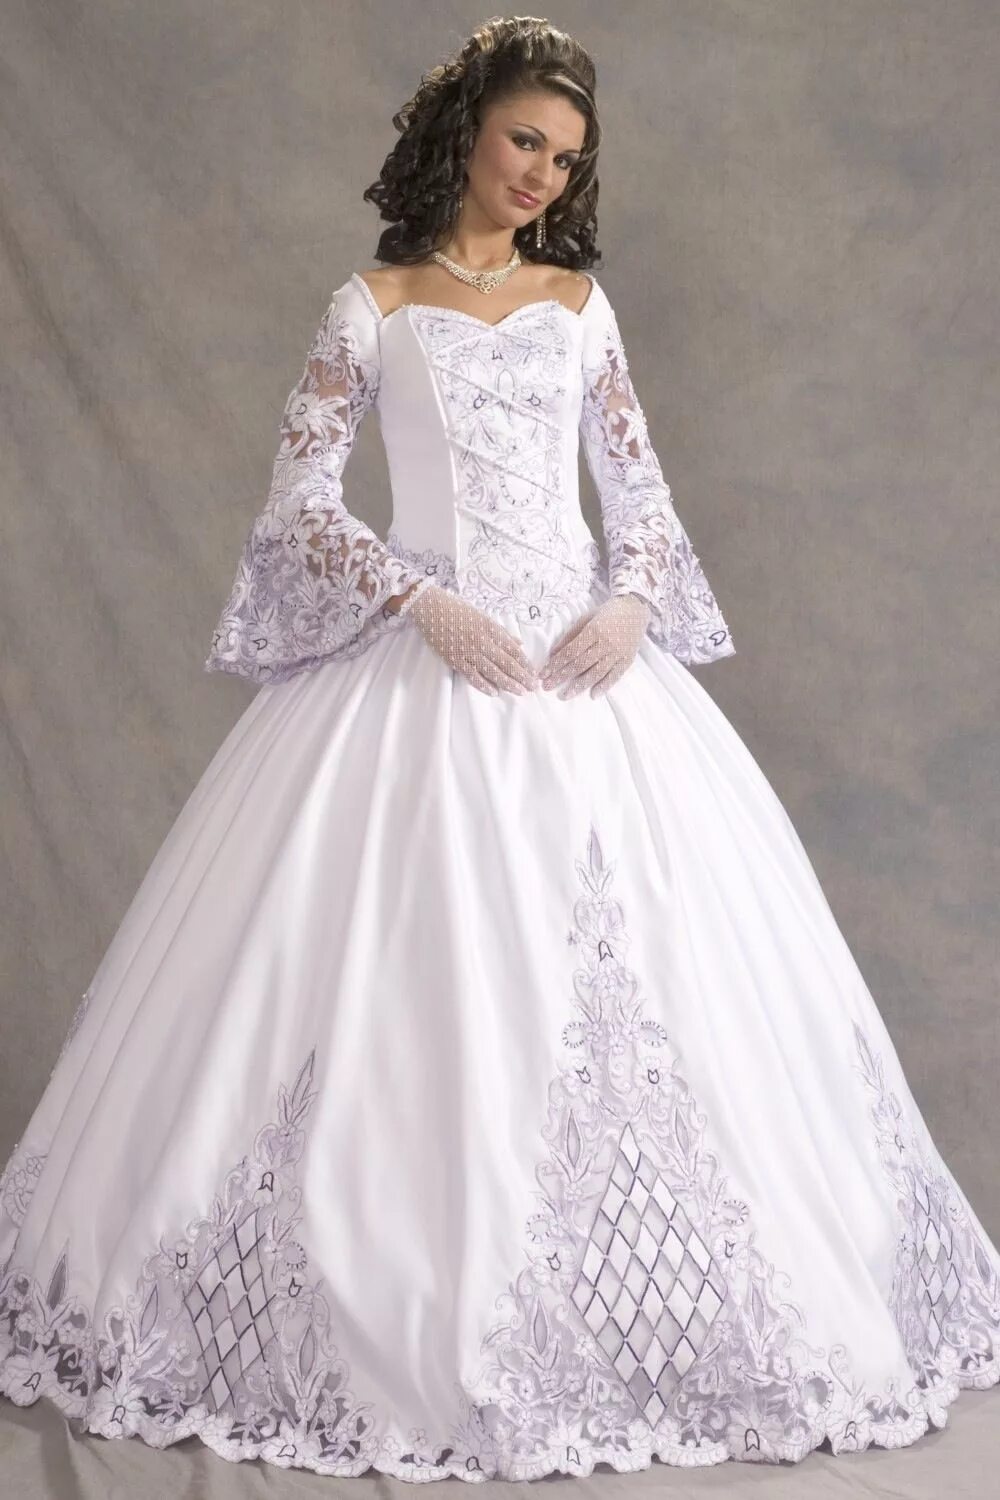 Ball Gown Свадебные платья. Wedding Gown платья Свадебные. Свадебное платье с рукавами. Белое бальное платье.